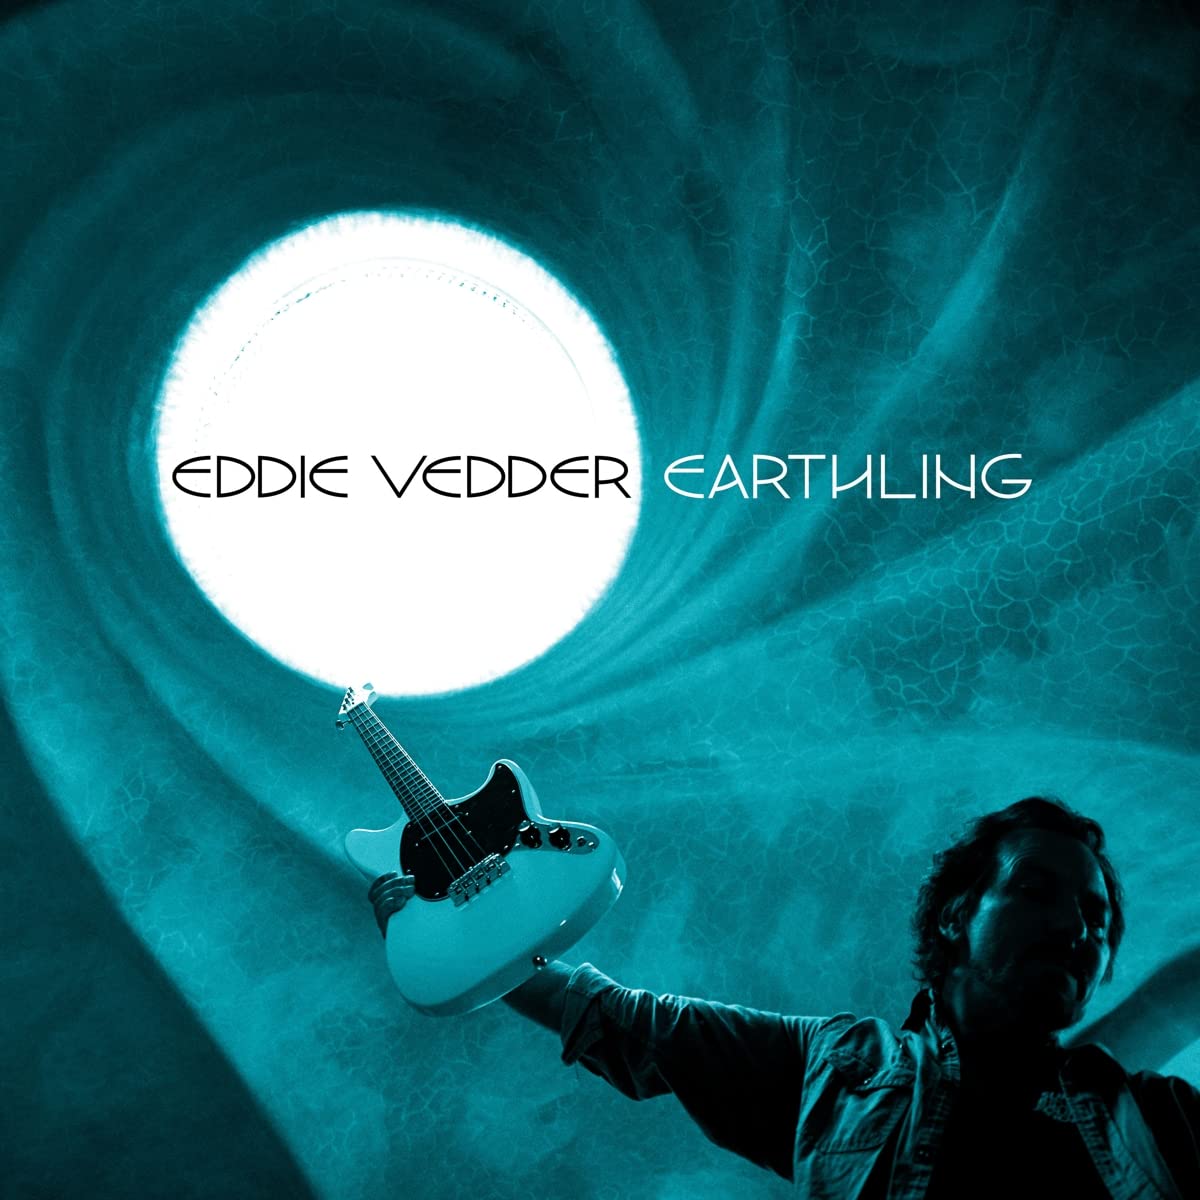 Vinile Eddie Vedder - Earthling NUOVO SIGILLATO, EDIZIONE DEL 24/11/2021 SUBITO DISPONIBILE